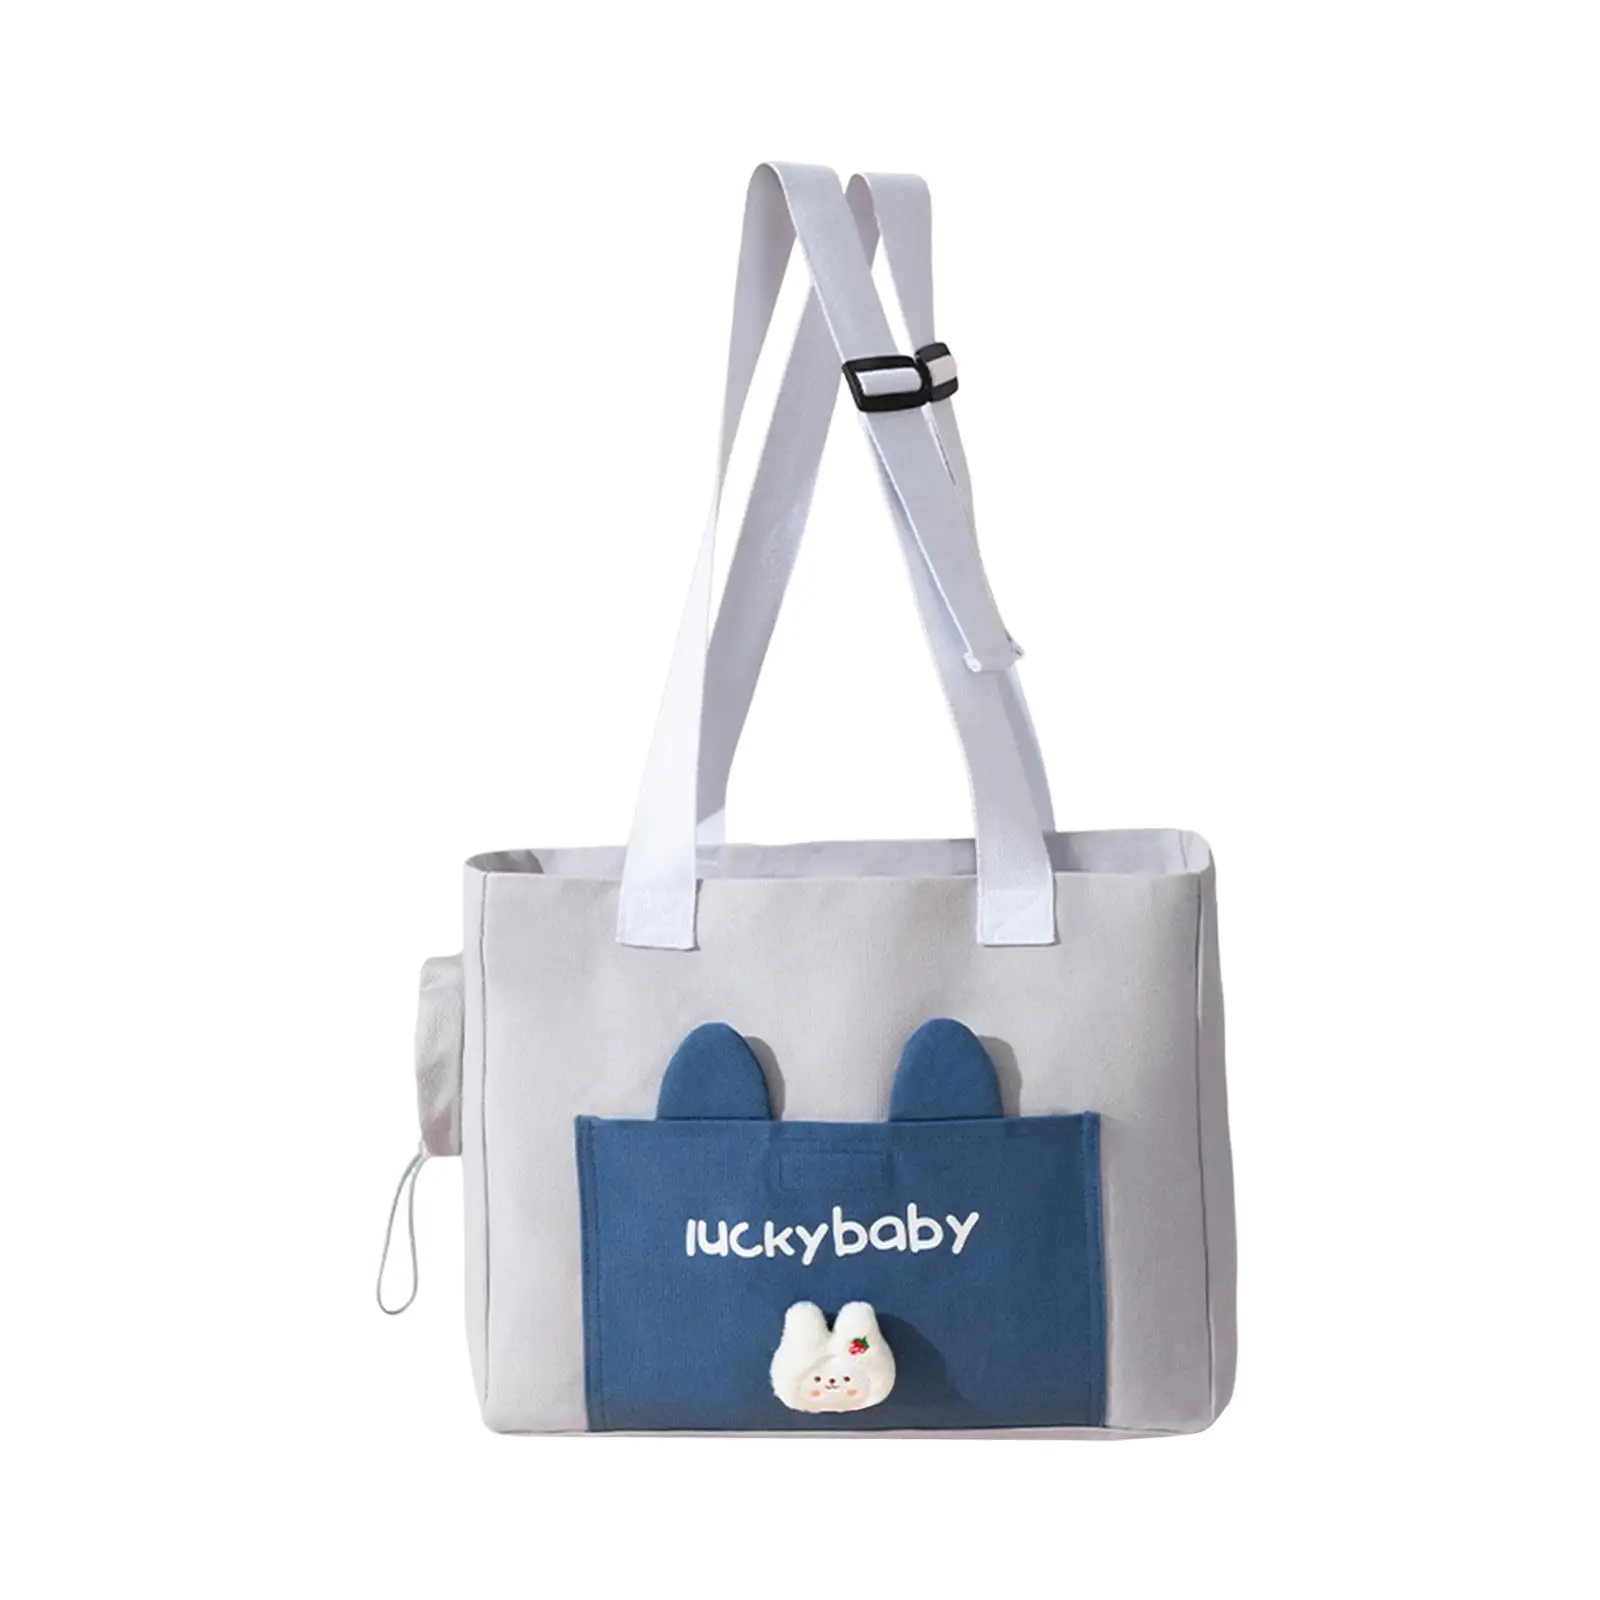 Pet Carrier Bag for Dog Cat Adjustable Shoulder Strap Travel Tote Canvas Shoulder Bag for Outdoor Transport Hiking Walking Kitty